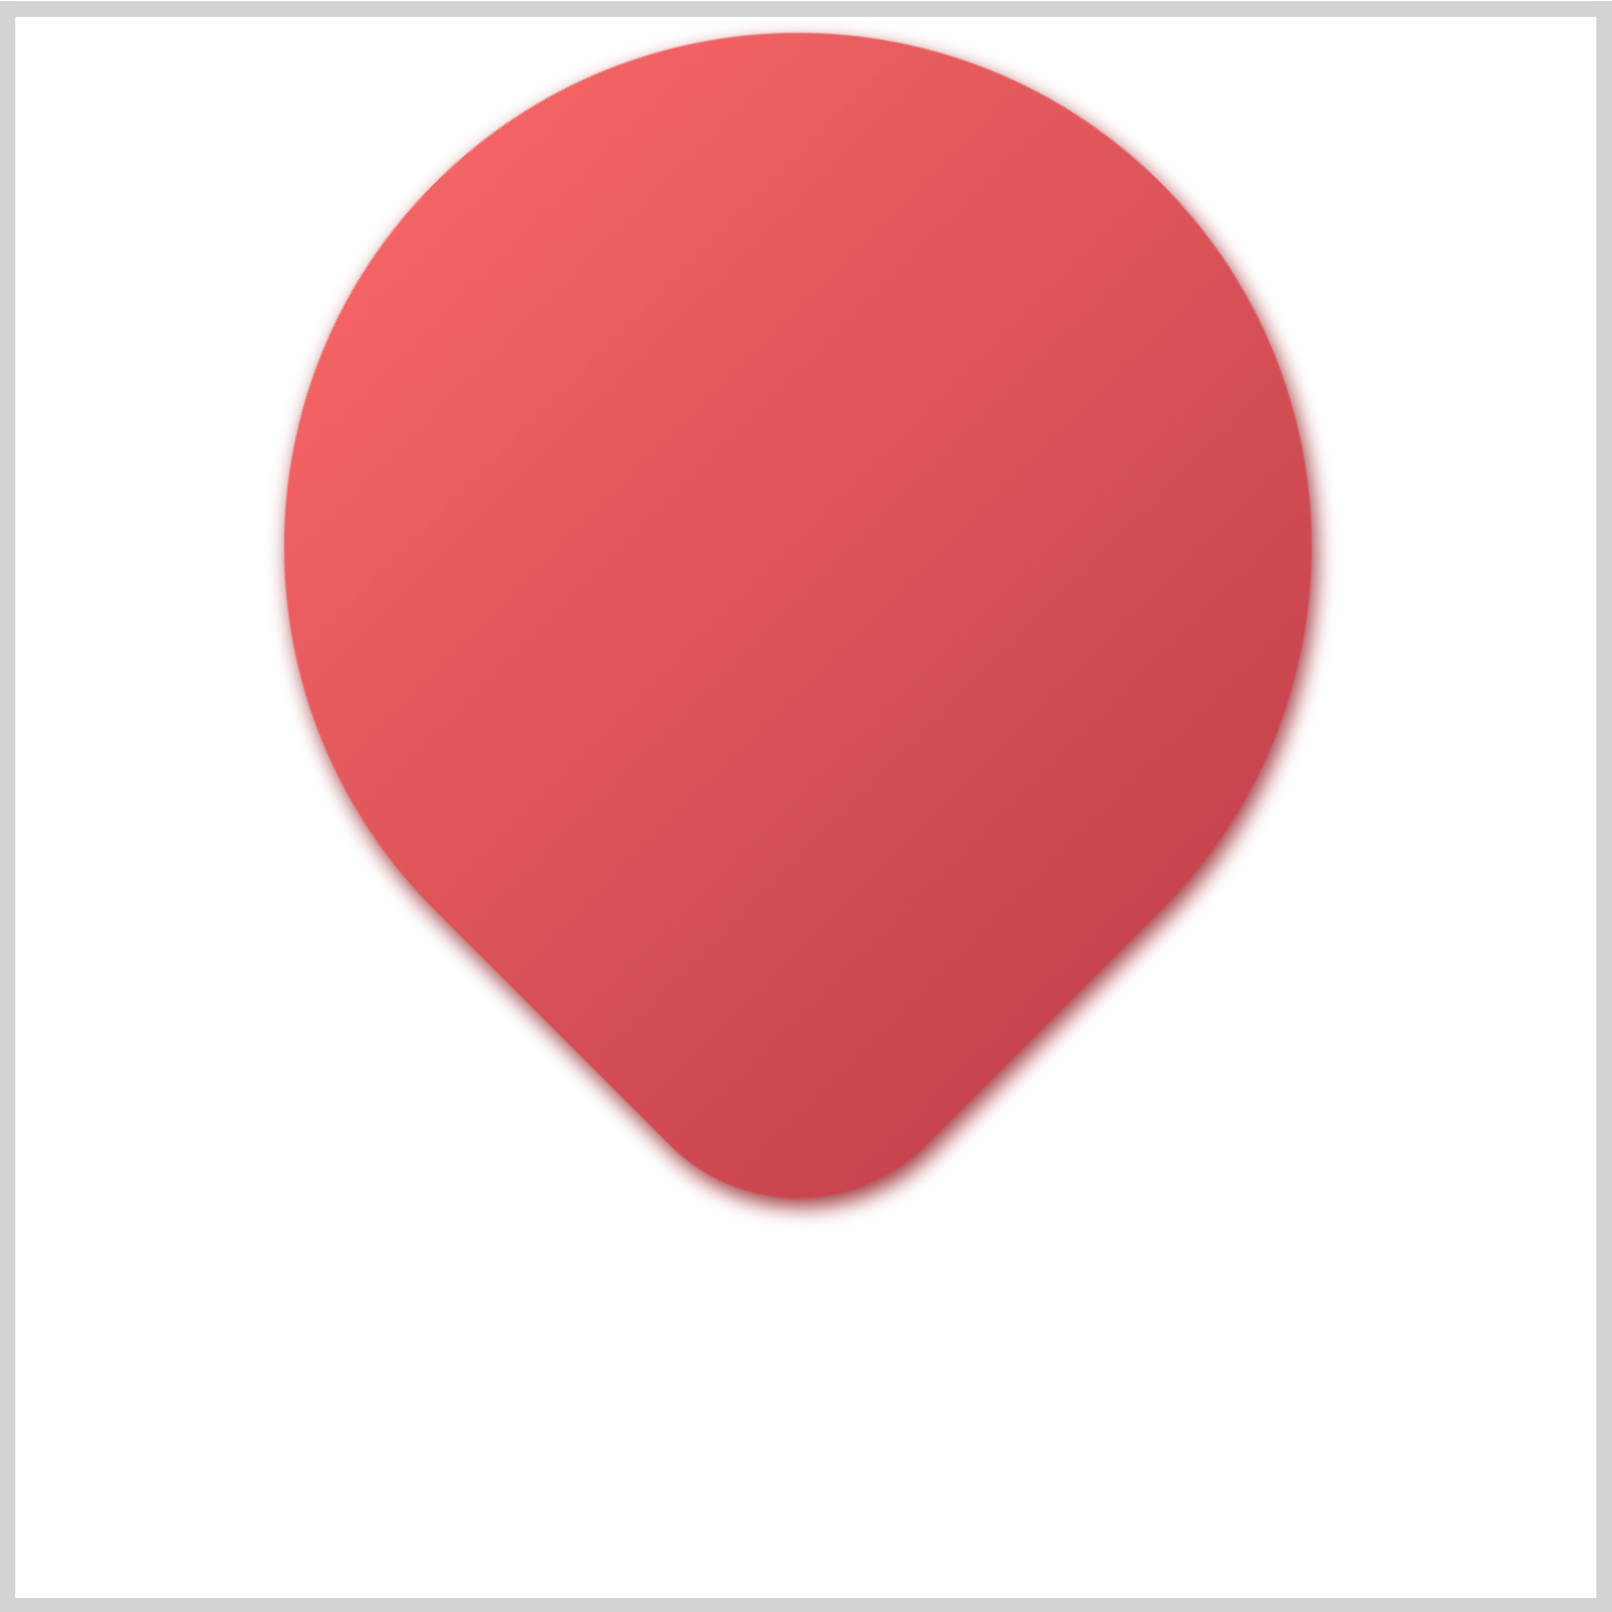 CSS Art – Hot Air Balloon